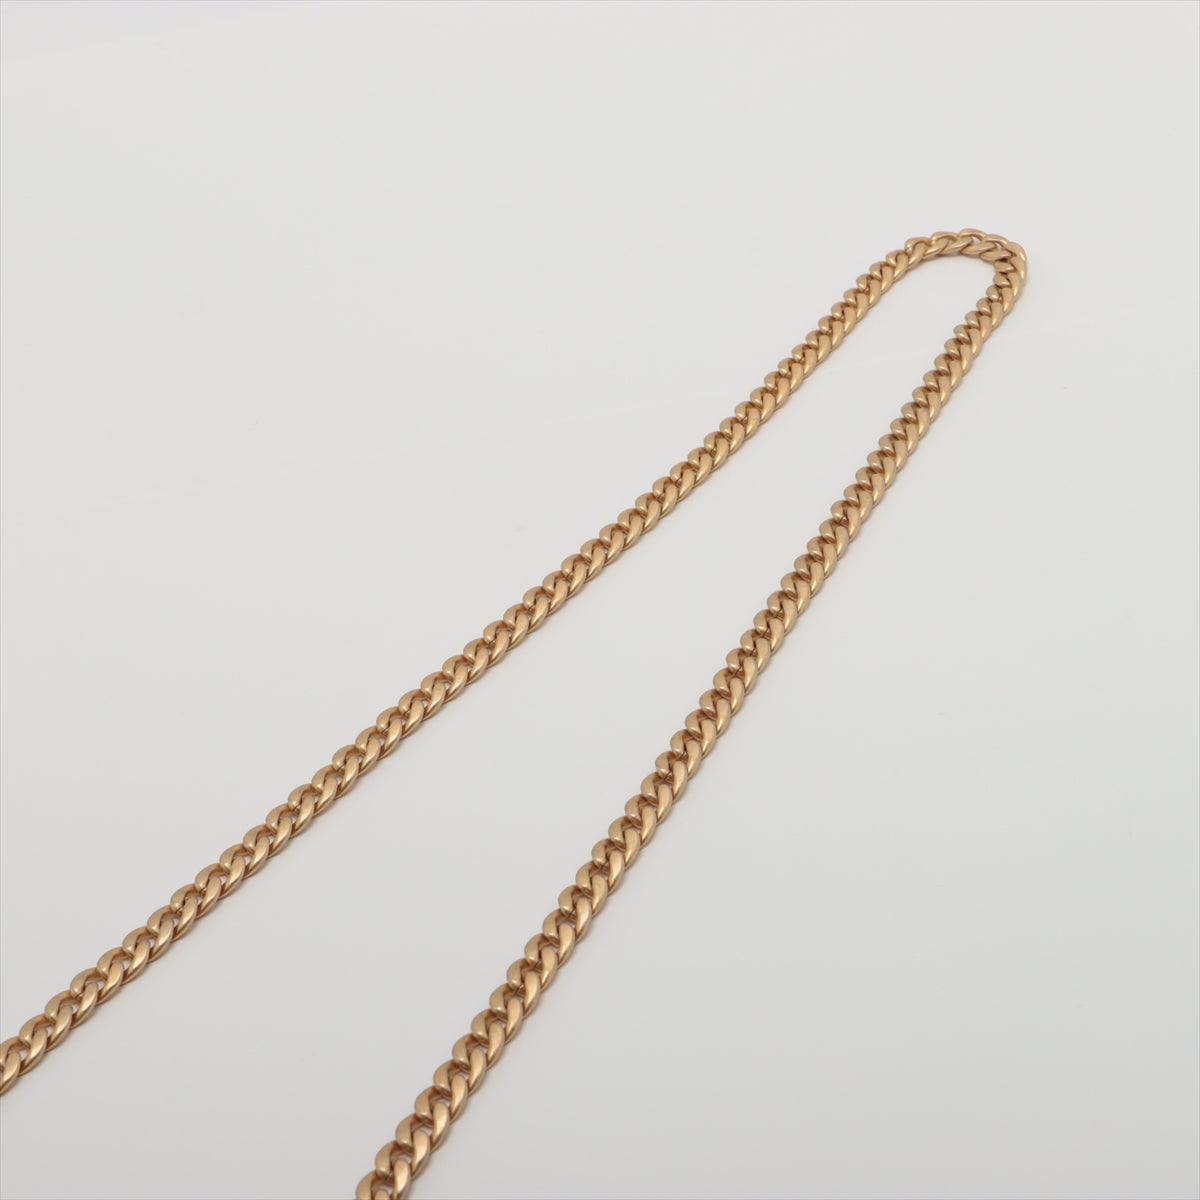 Chanel Mini Matelasse Caviar Skin Chain Shoulder Bag heart metal fittings Pink Gold Metal Fittings